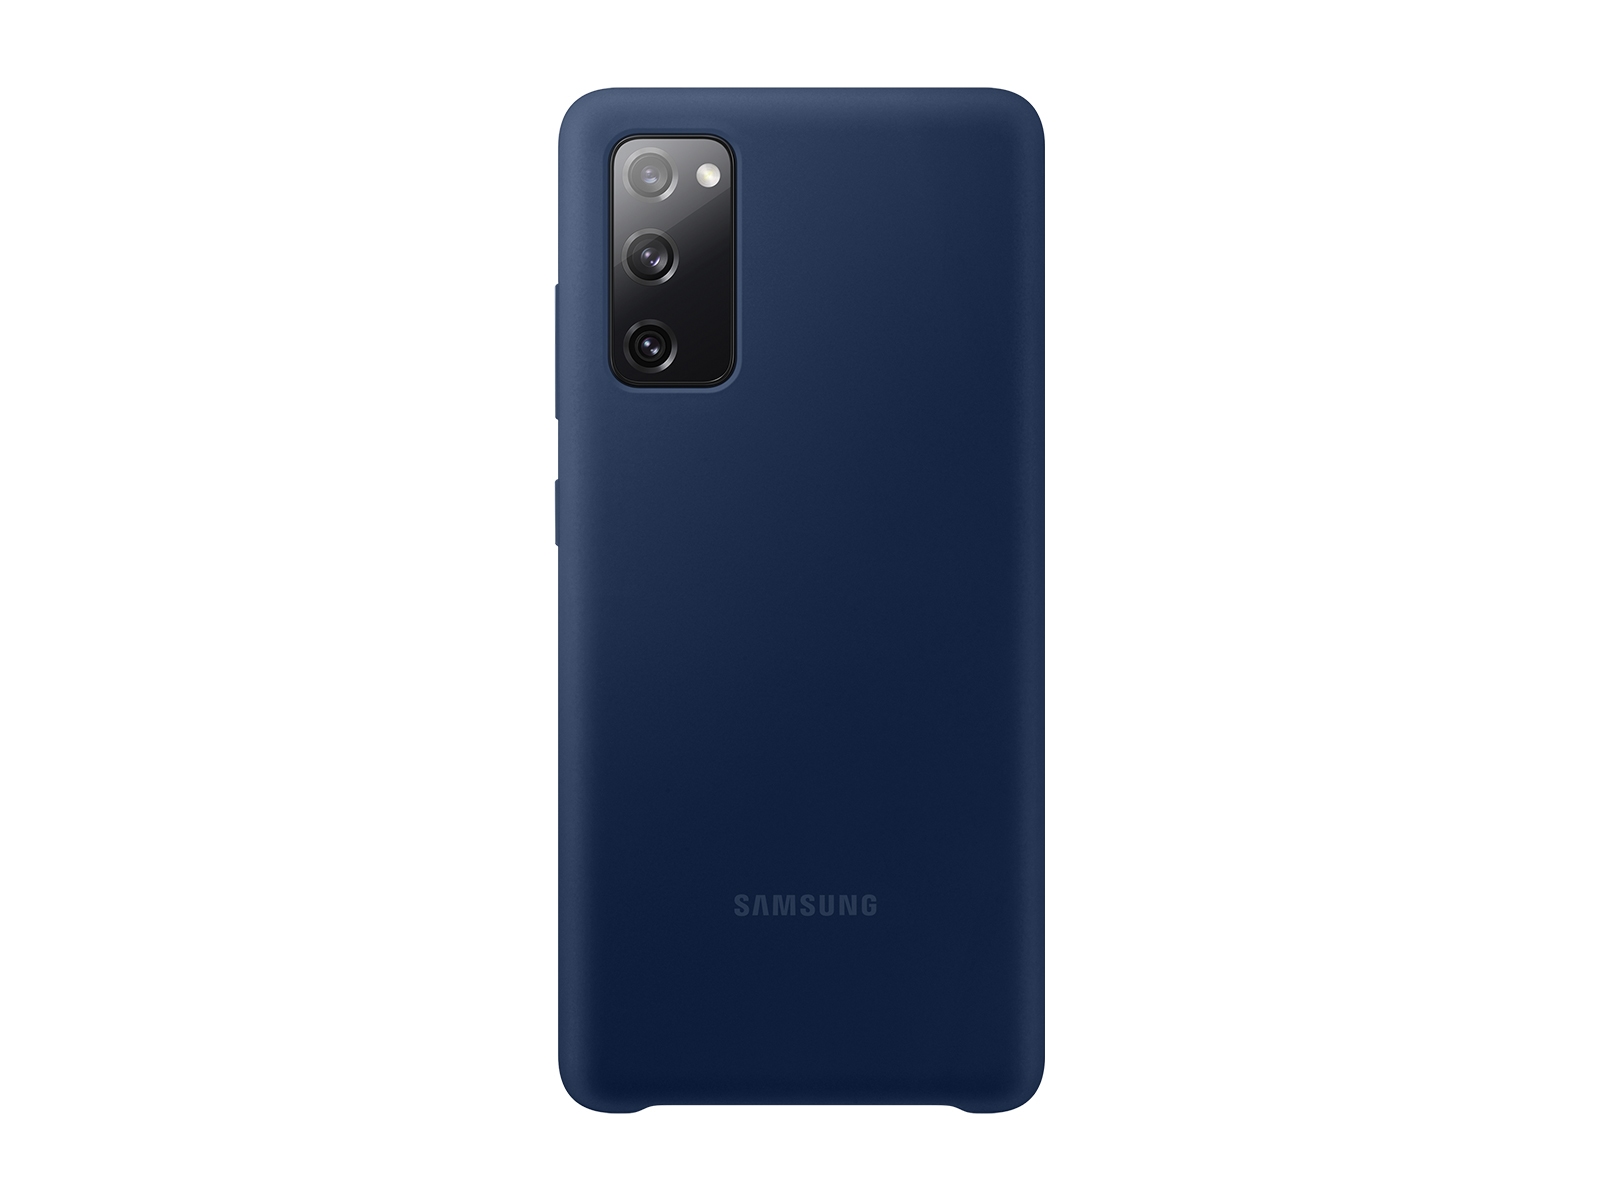 Cool Funda Silicona Azul para Samsung Galaxy S20 FE